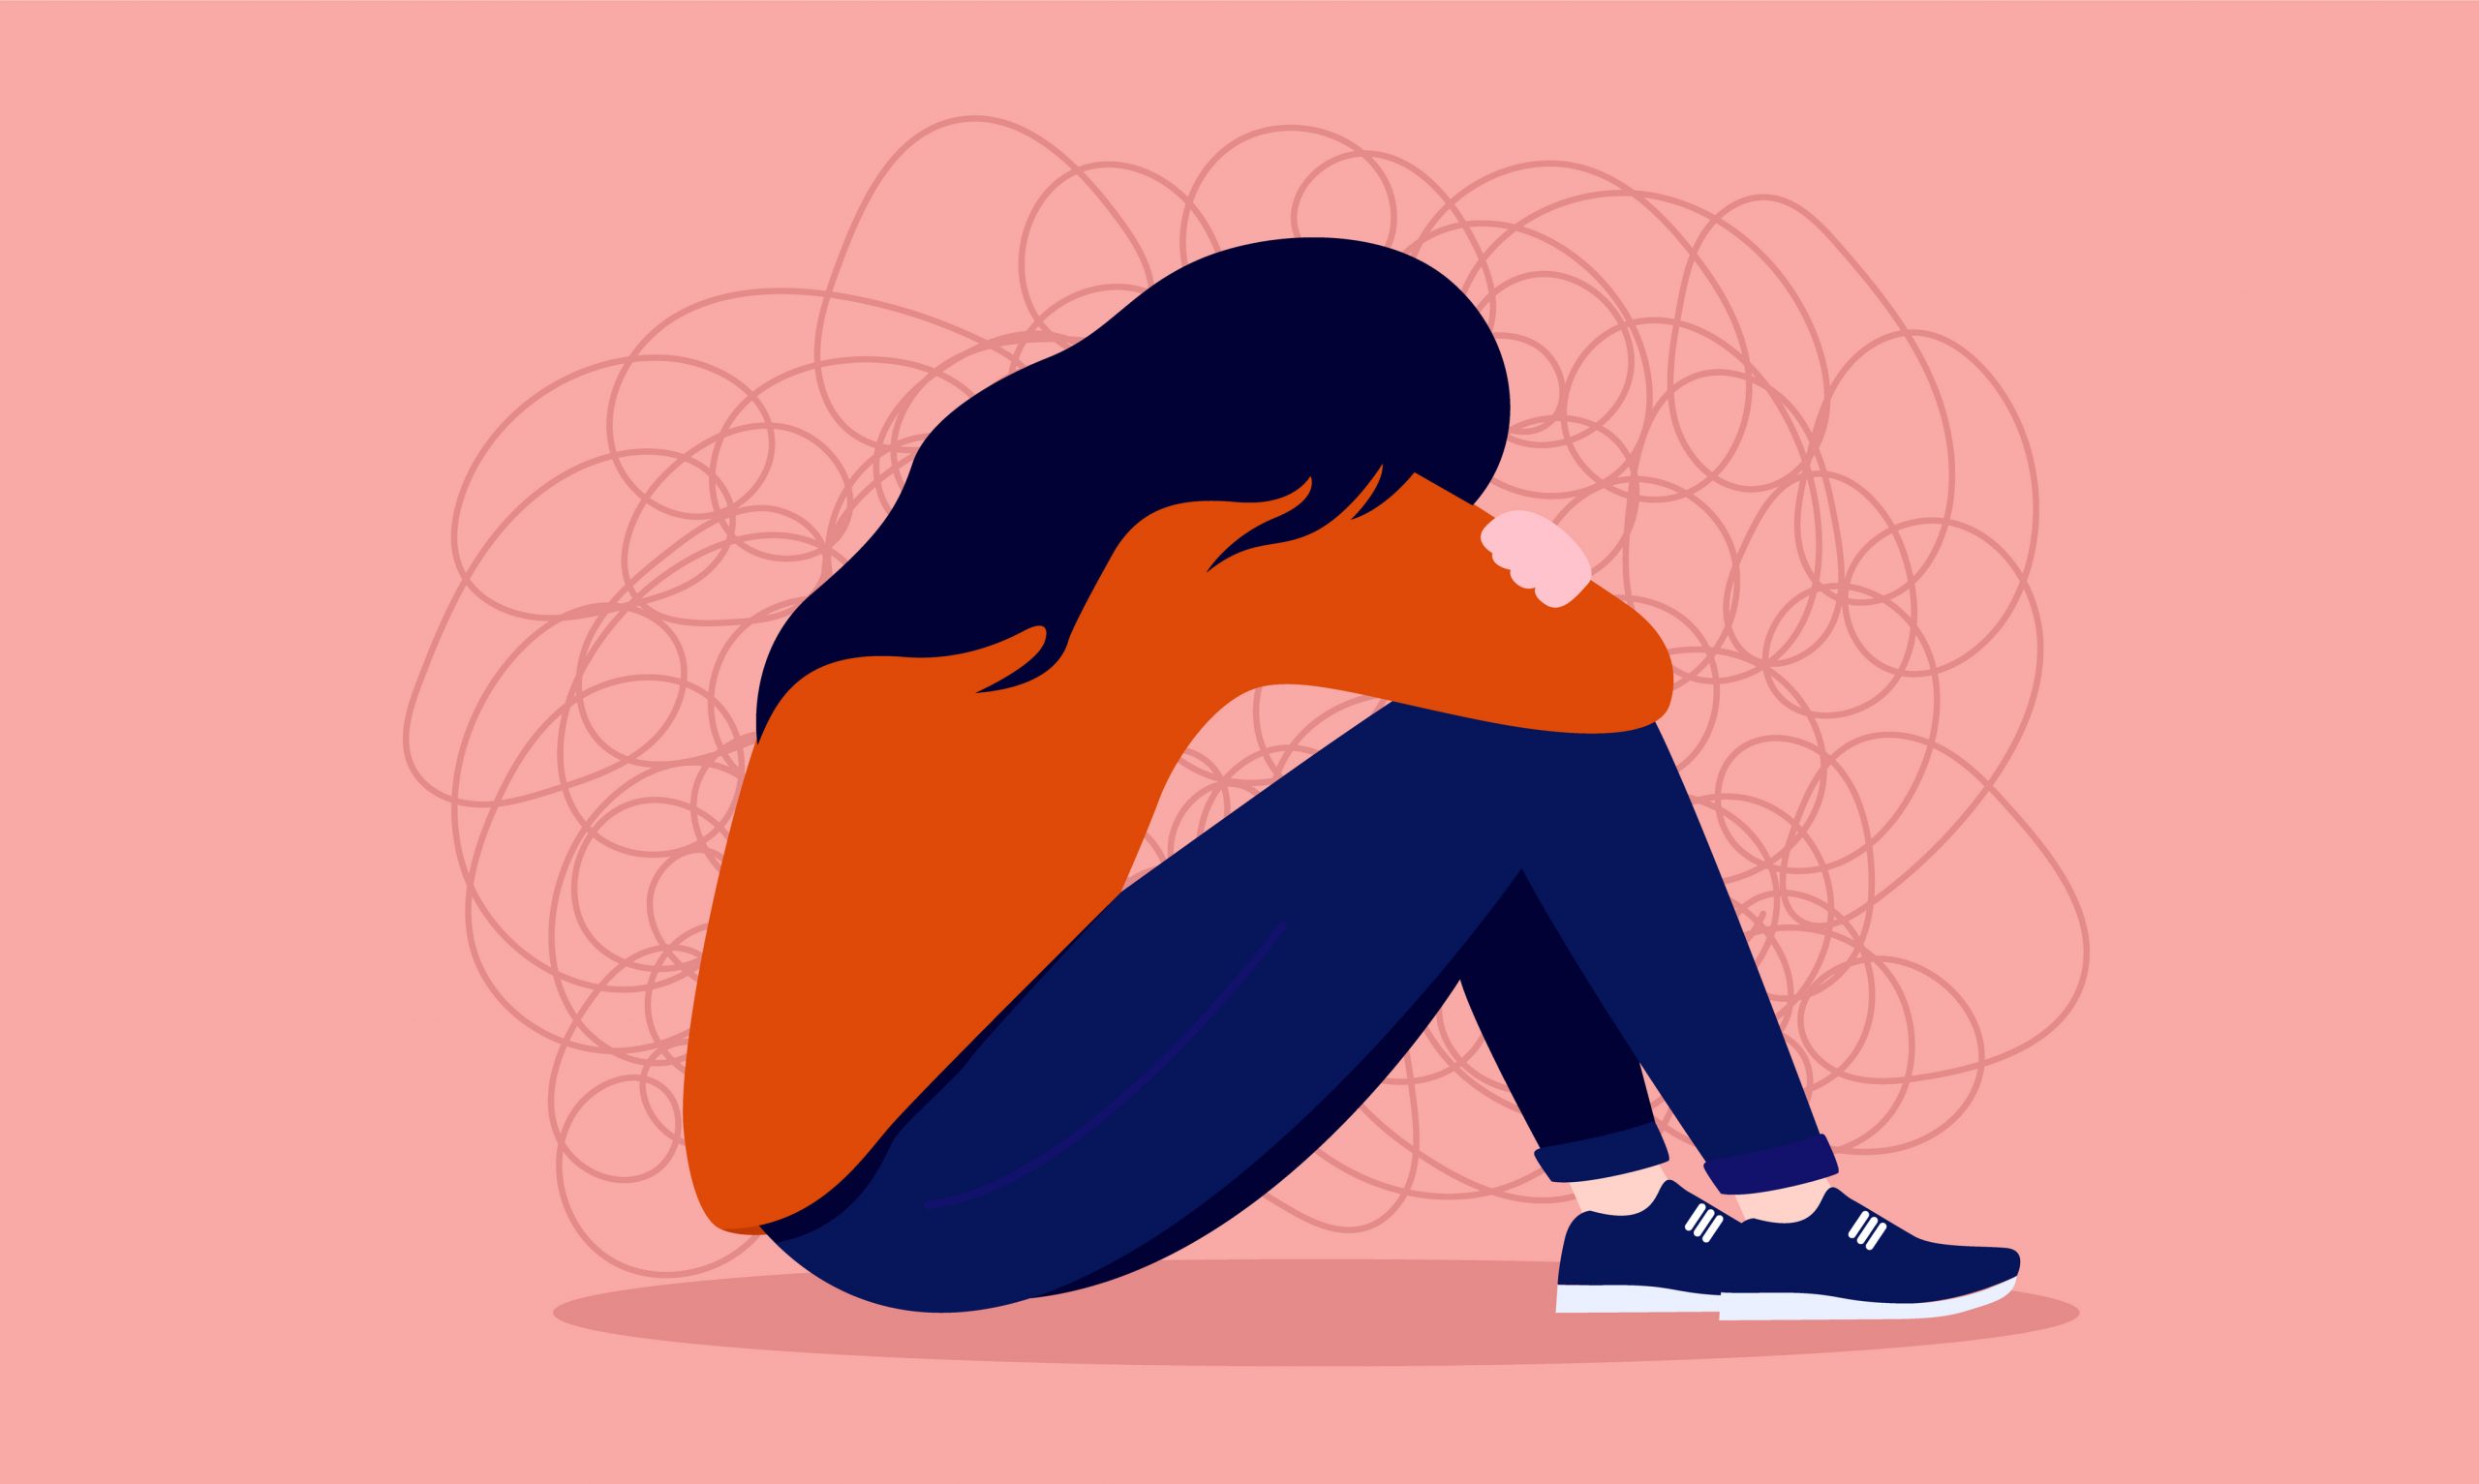 Problemas de salud mental afecta más a las mujeres